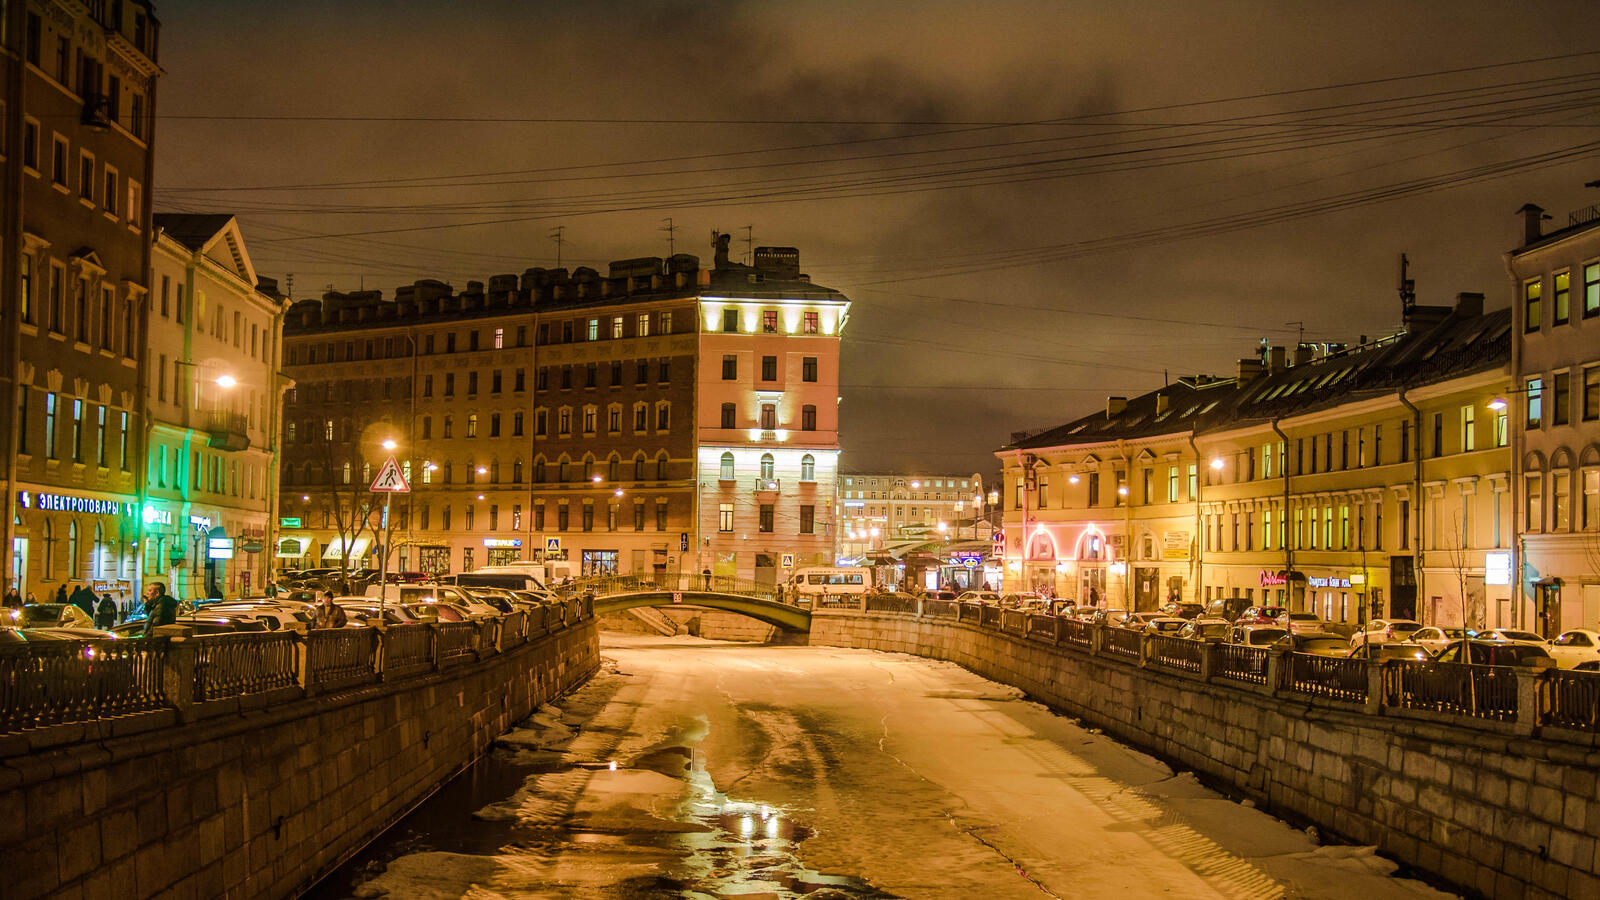 Wallpapers St Petersburg frozen river street on the desktop